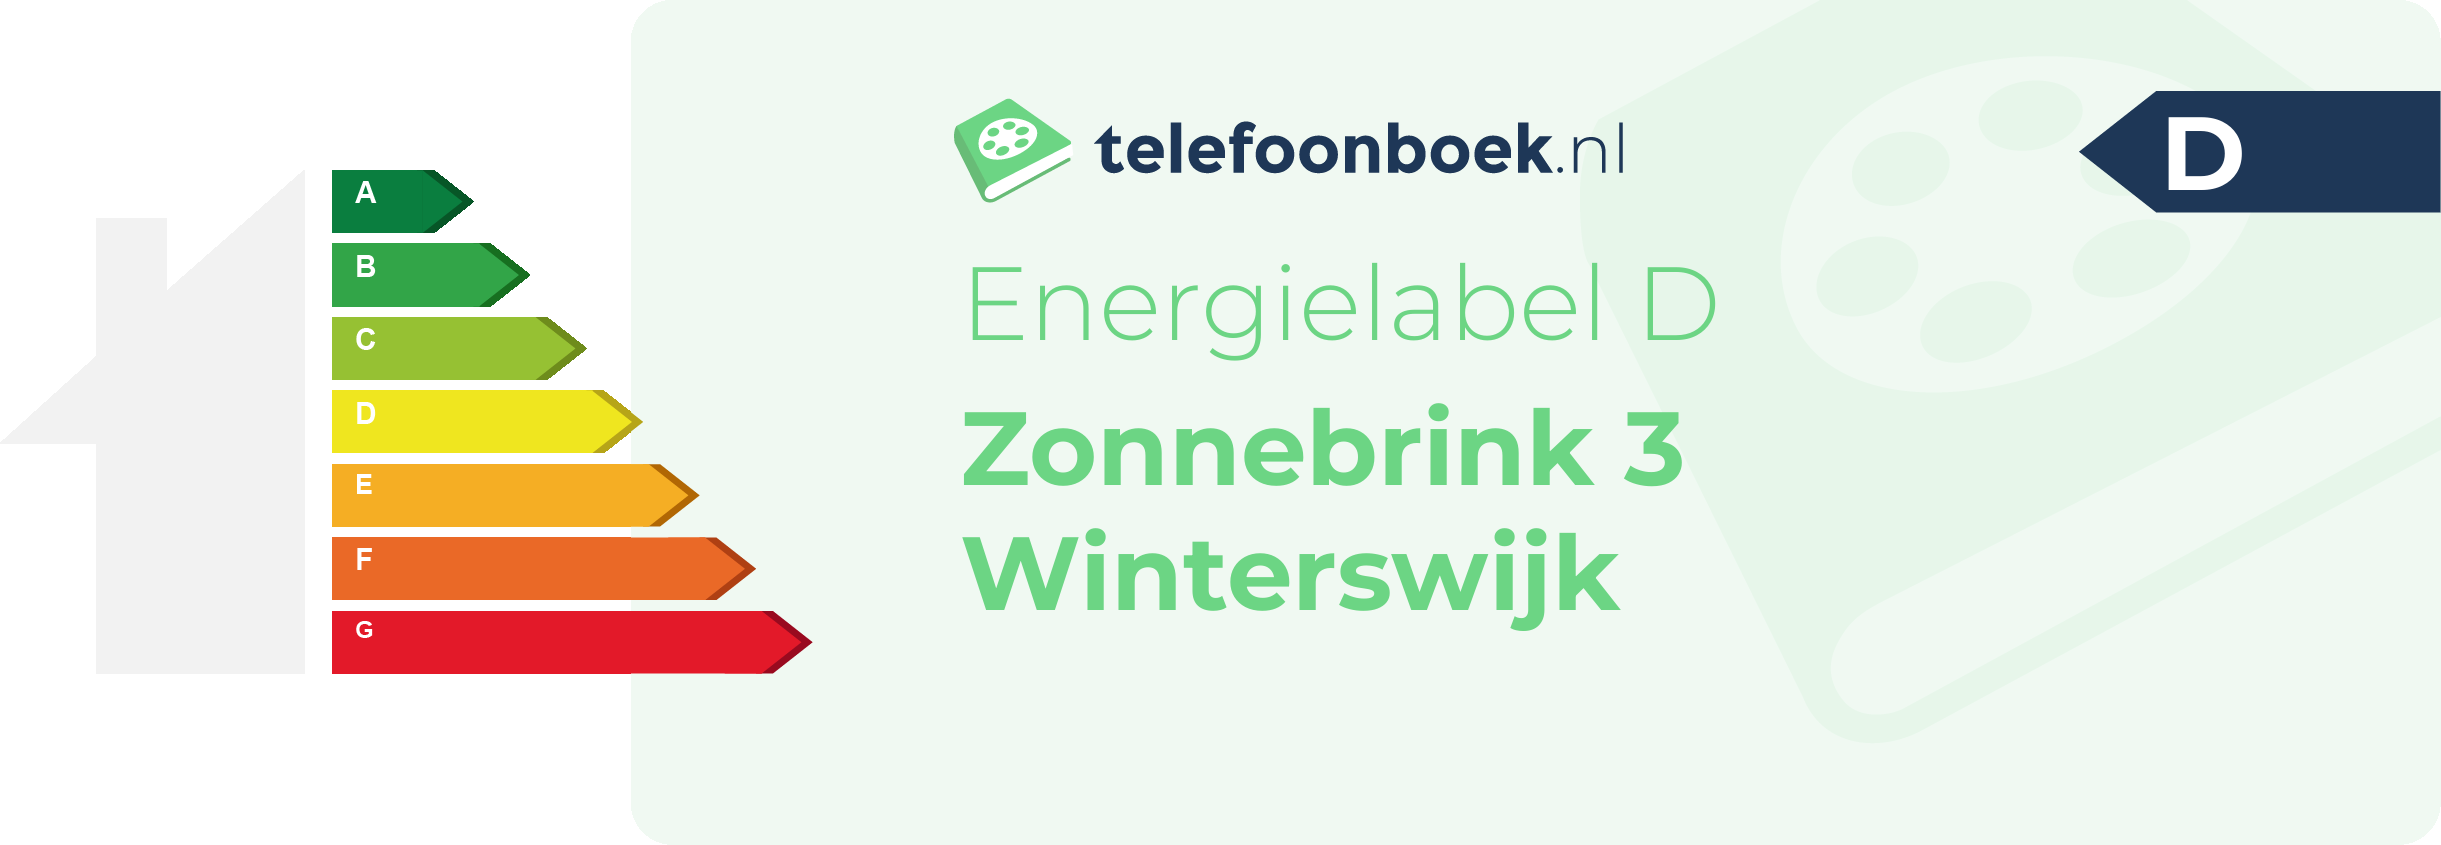 Energielabel Zonnebrink 3 Winterswijk